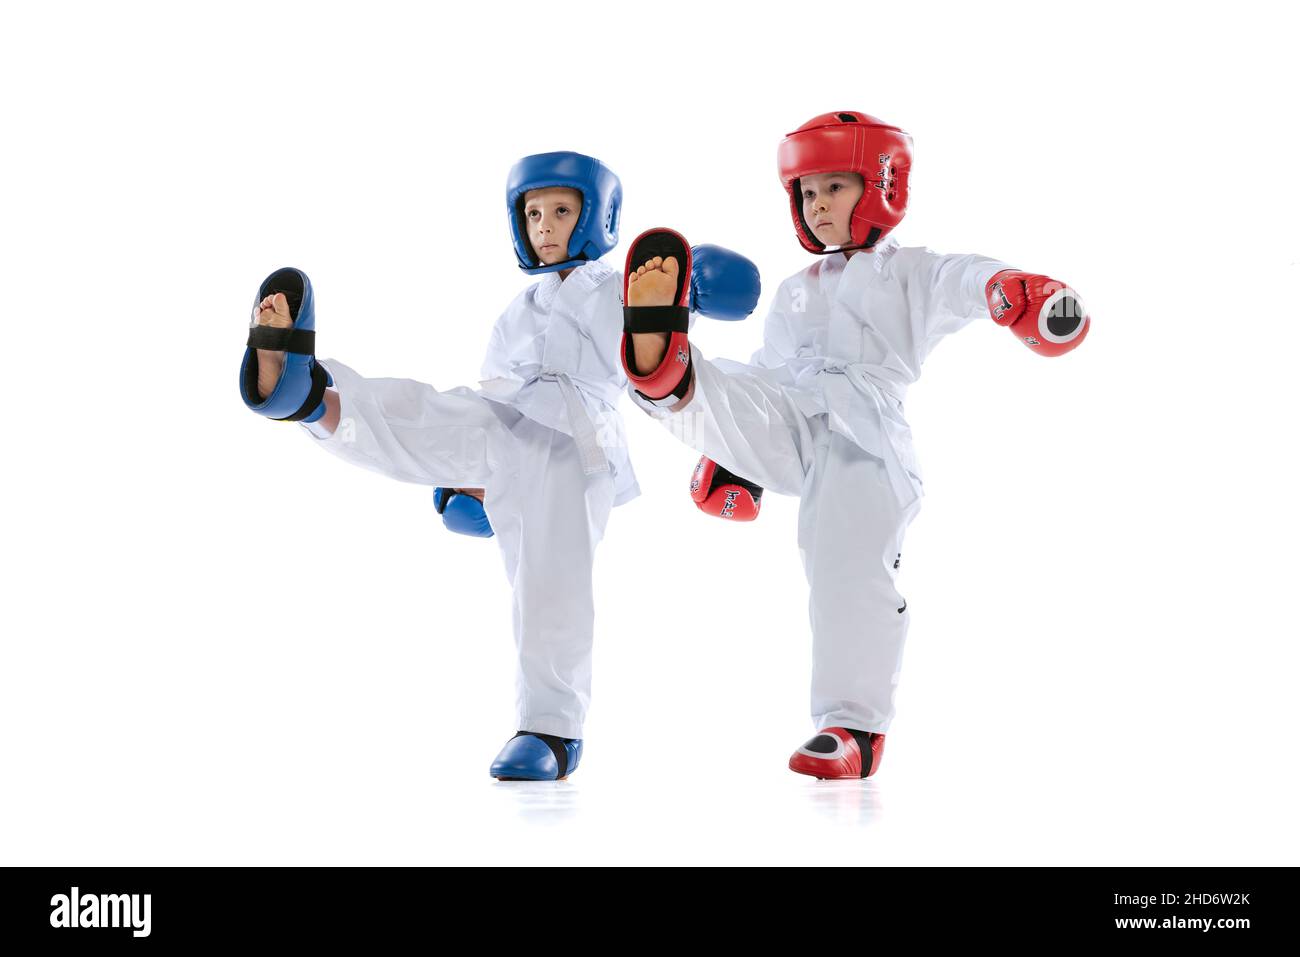 Studio girato di due bambini piccoli, ragazzi, atleti taekwondo che indossano dooks e uniformi sportive isolato su sfondo bianco. Foto Stock